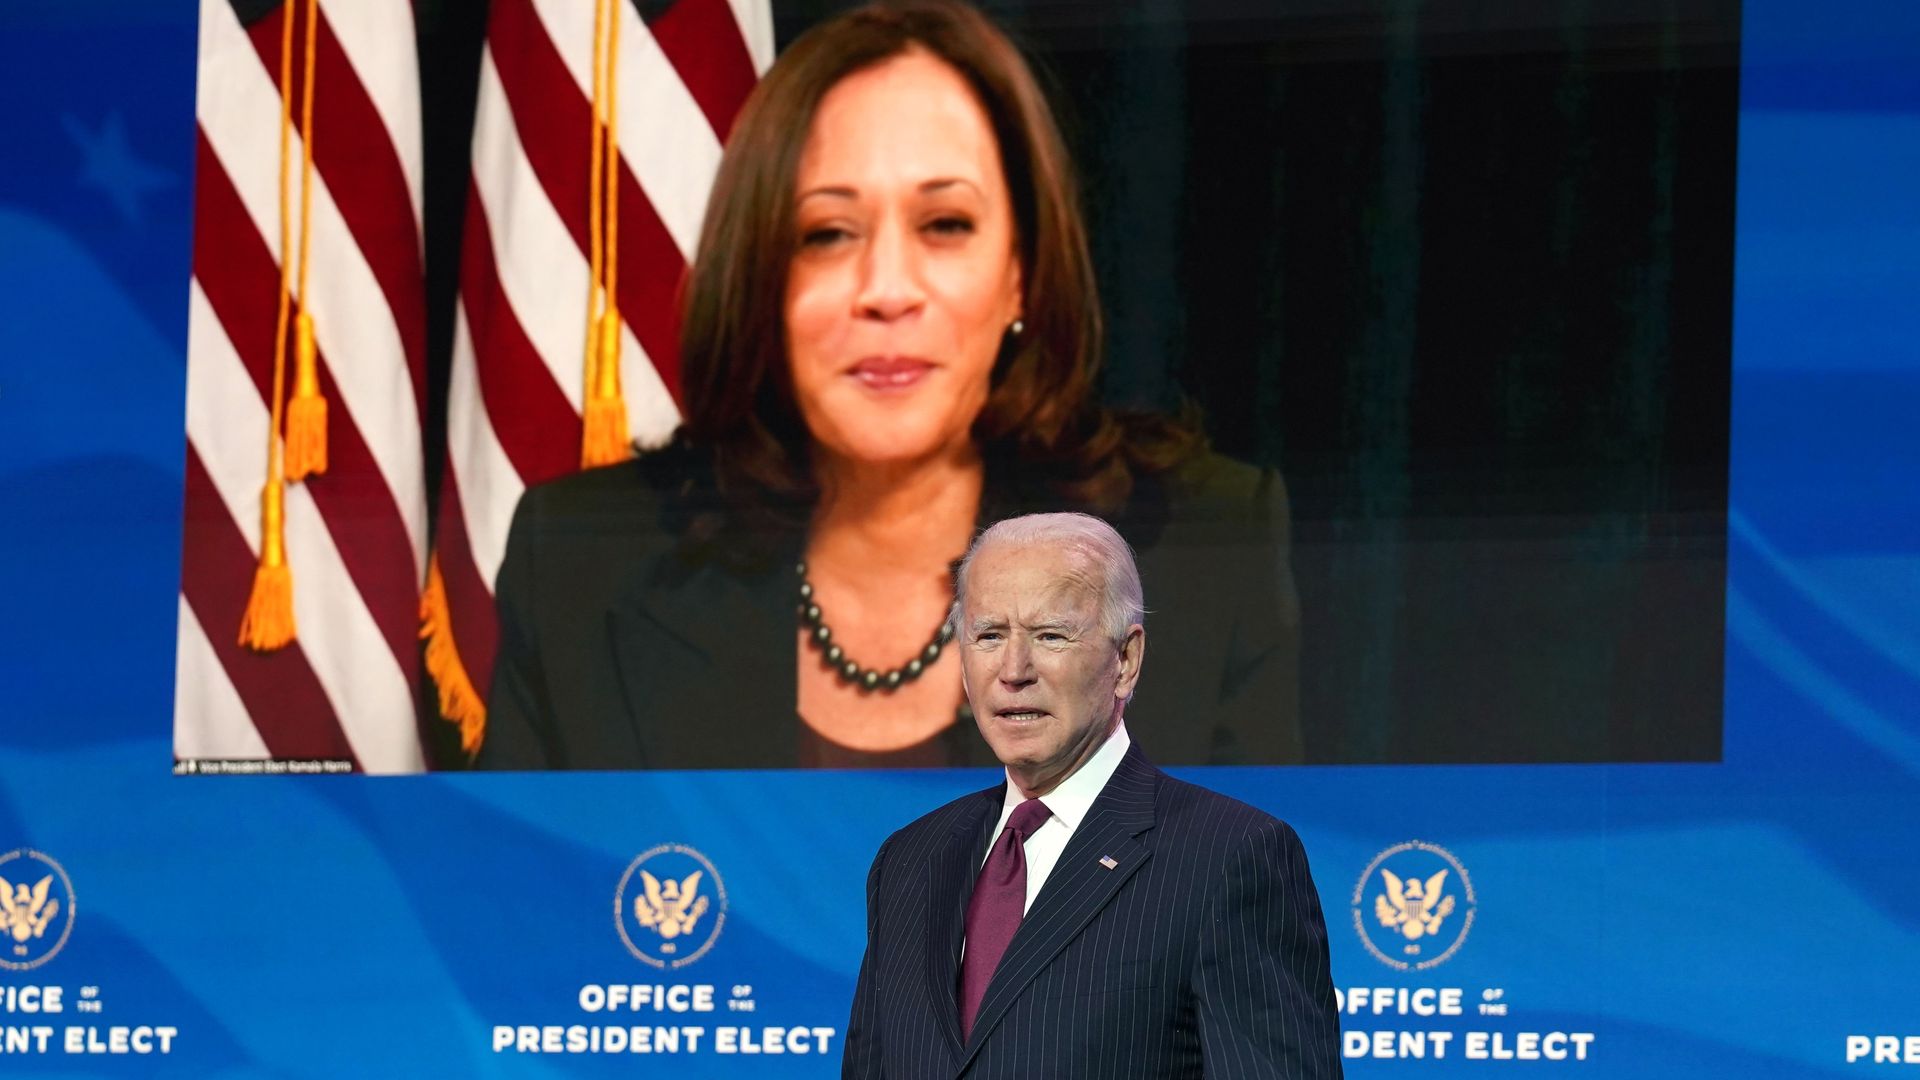 Vice President-elect Kamala Harris looks on as Joe Biden speaks in Delaware on Wednesday.